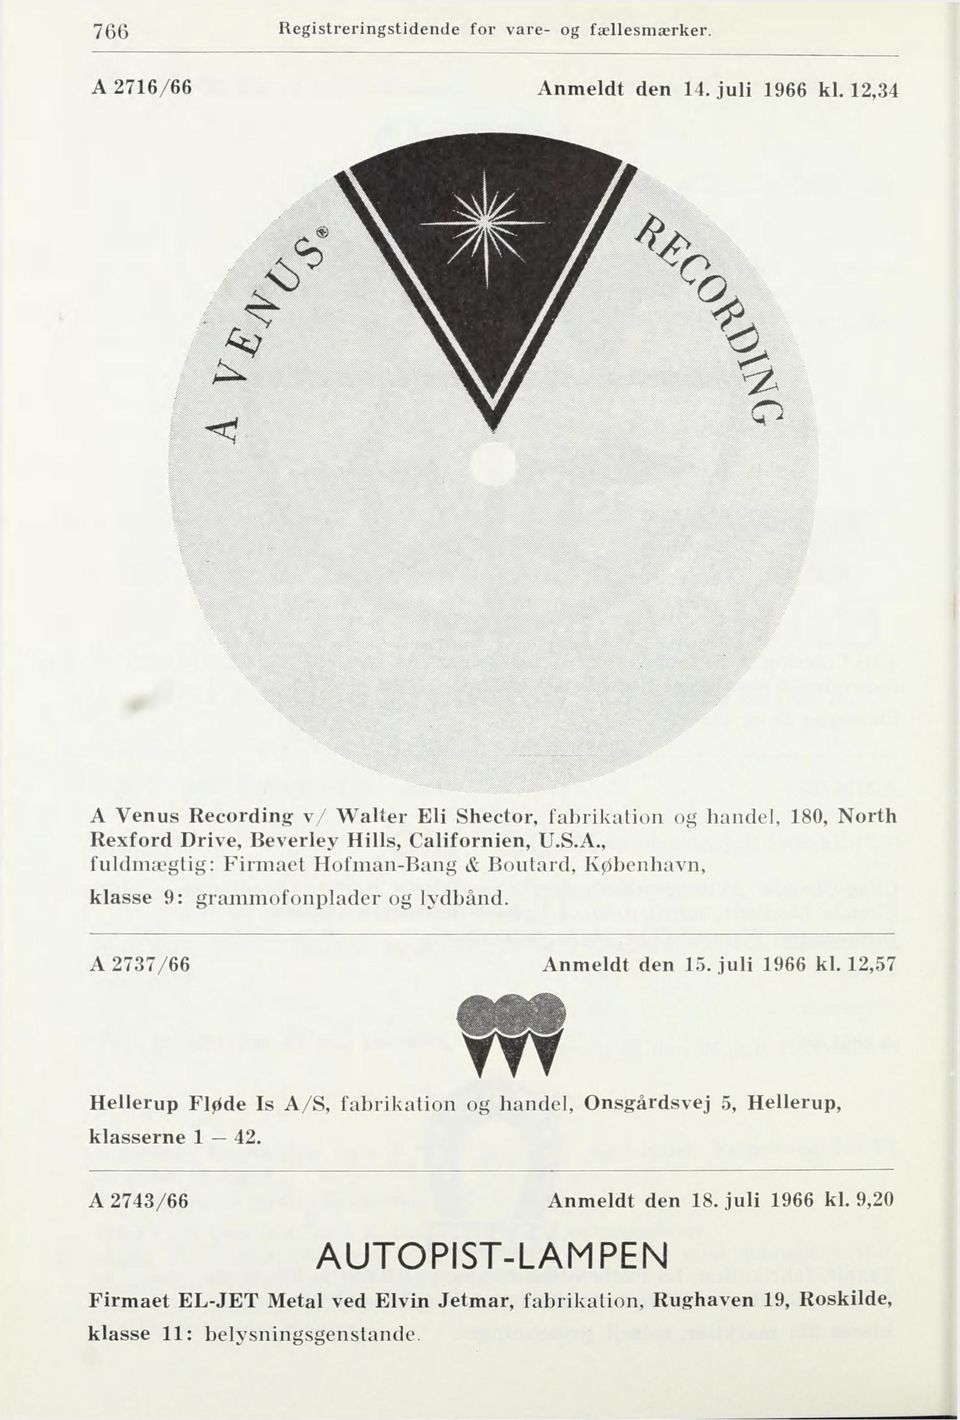 A 2737/66 Anmeldt den 15. juli 1966 kl. 12,57 Hellerup Fløde Is A/S, fabrikation og handel, Onsgårdsvej 5, Hellerup, klasserne 1 42.